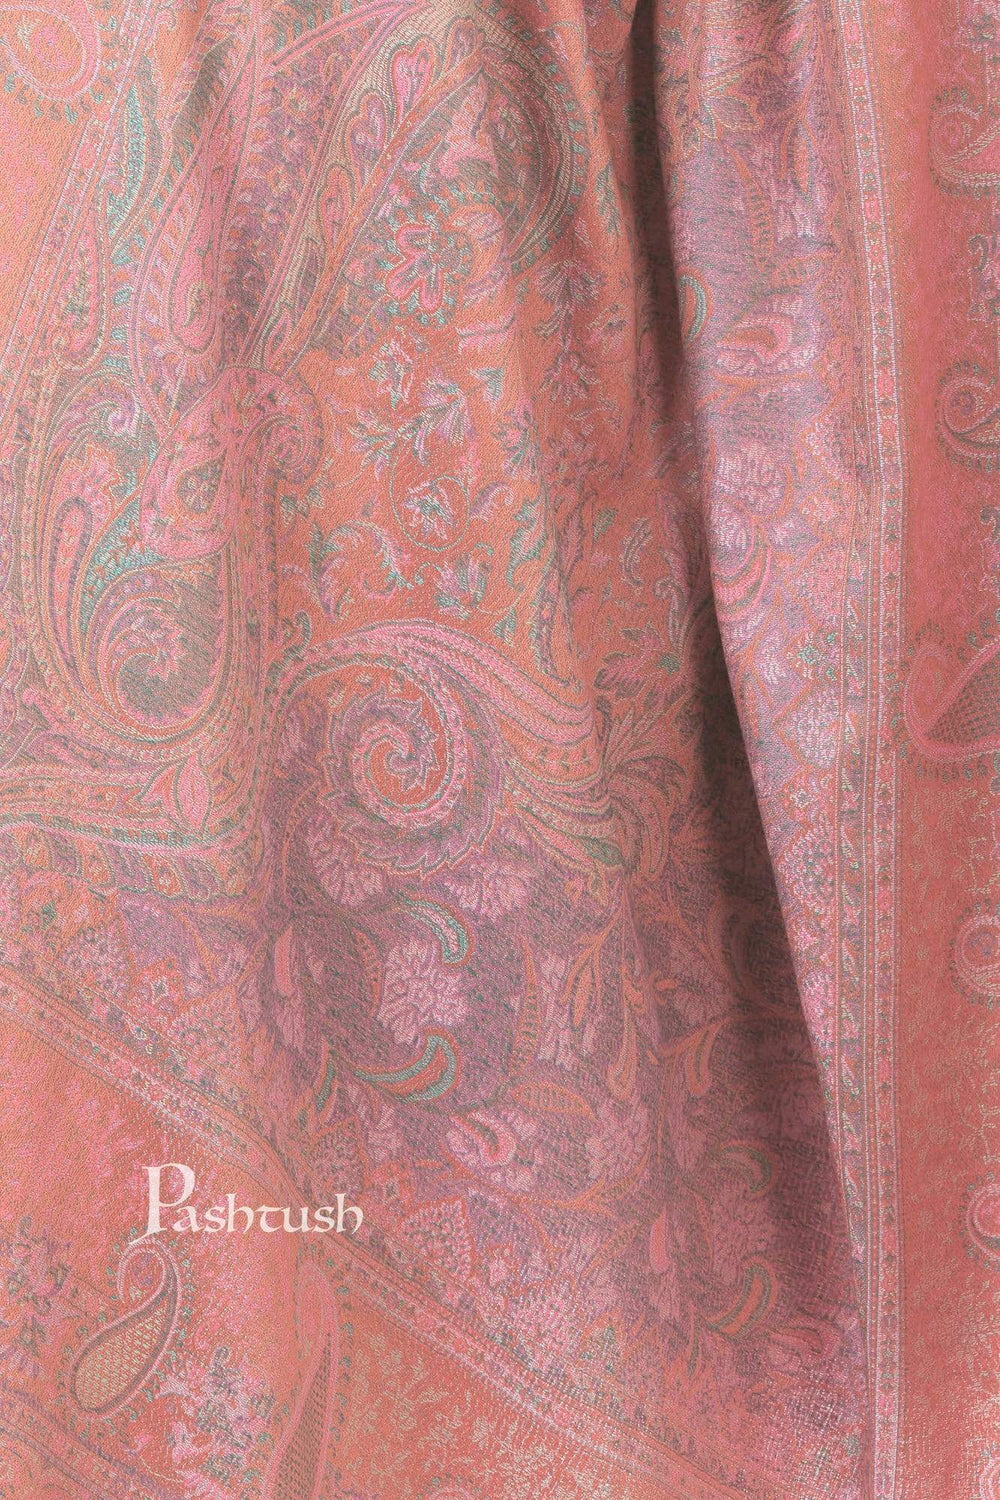 Pashtush India 100x200 Pashtush Women's Kashmiri Shawl, Faux Pashmina Design, Light Amber